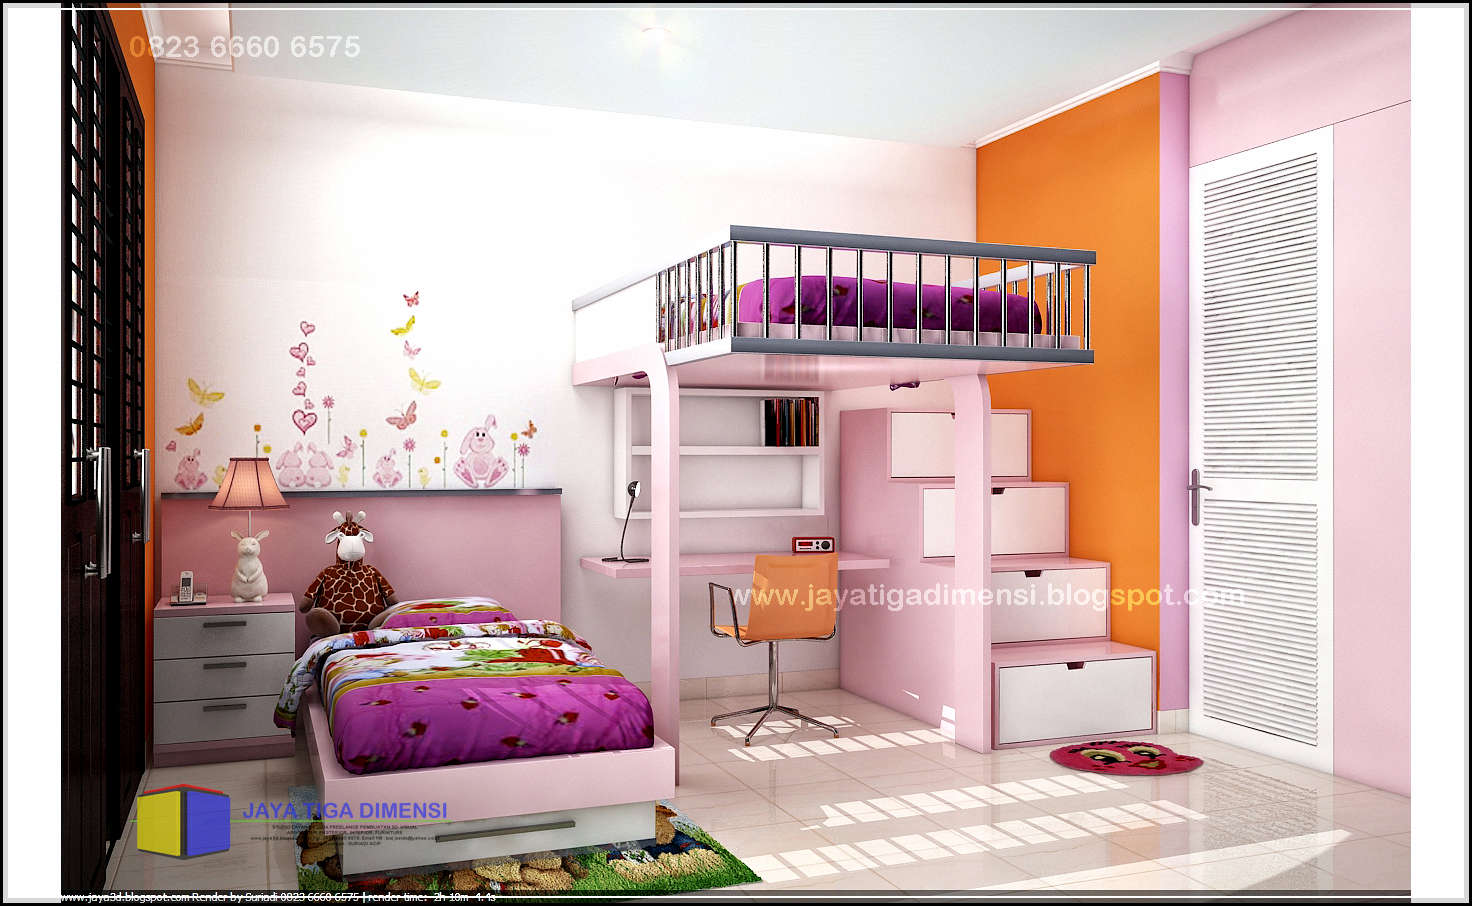 20 Ragam Seni Desain Interior Kamar Tidur Barbie Yang Belum Banyak Diketahui